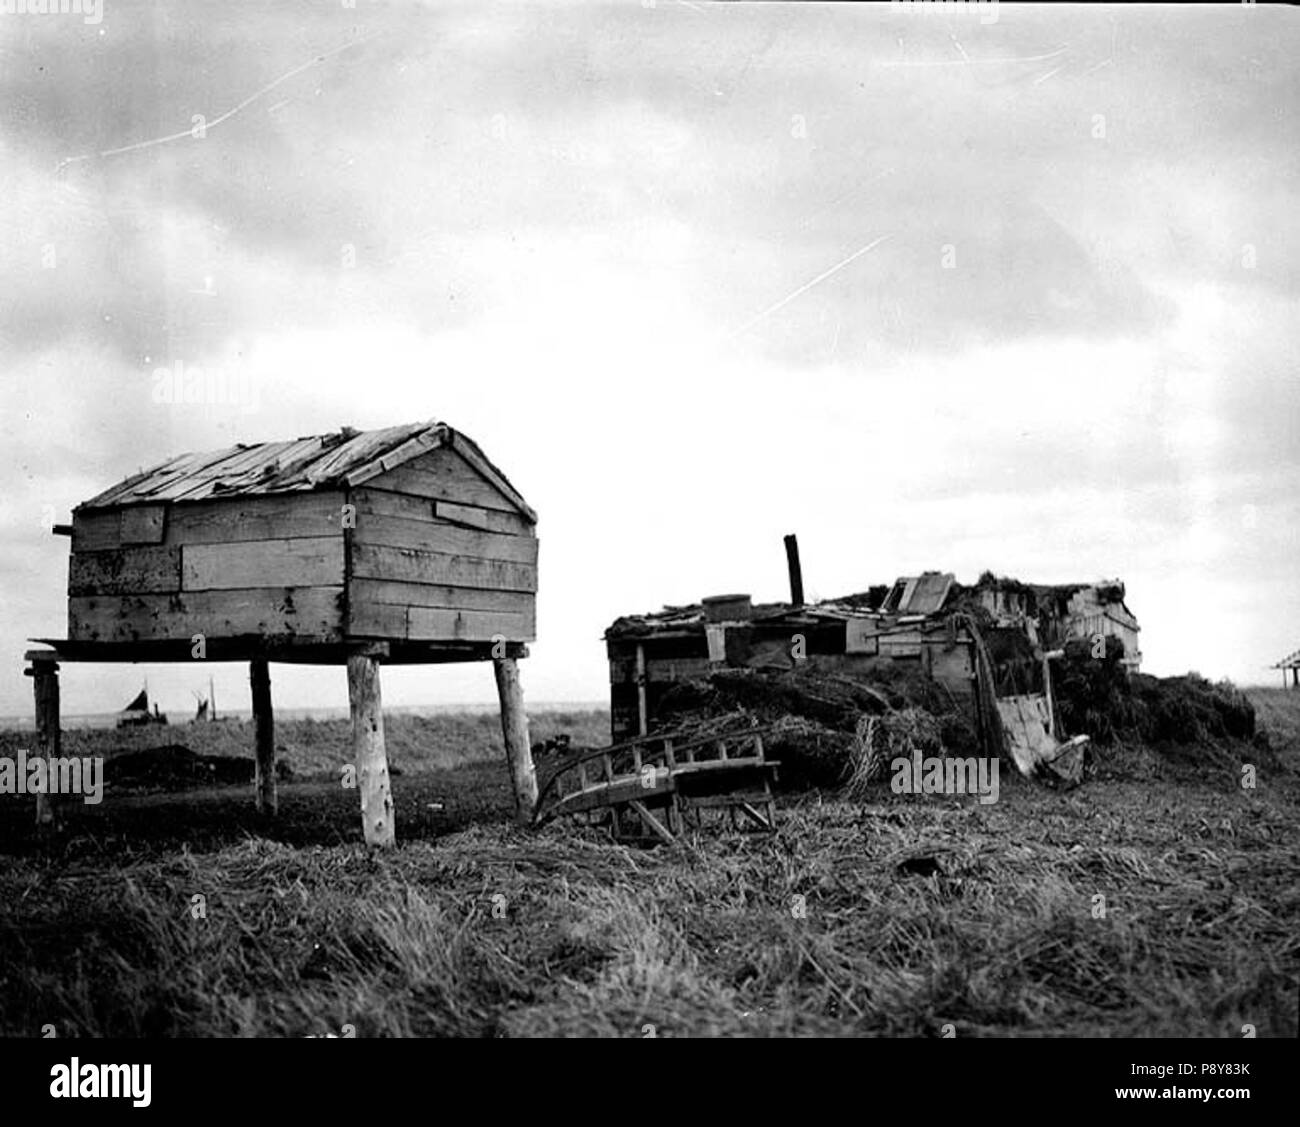 . 278 barabara Eskimo, ou sod hut, et de l'alimentation, la mémoire cache Nushagak, Alaska, 1917 Cobb (134) Banque D'Images